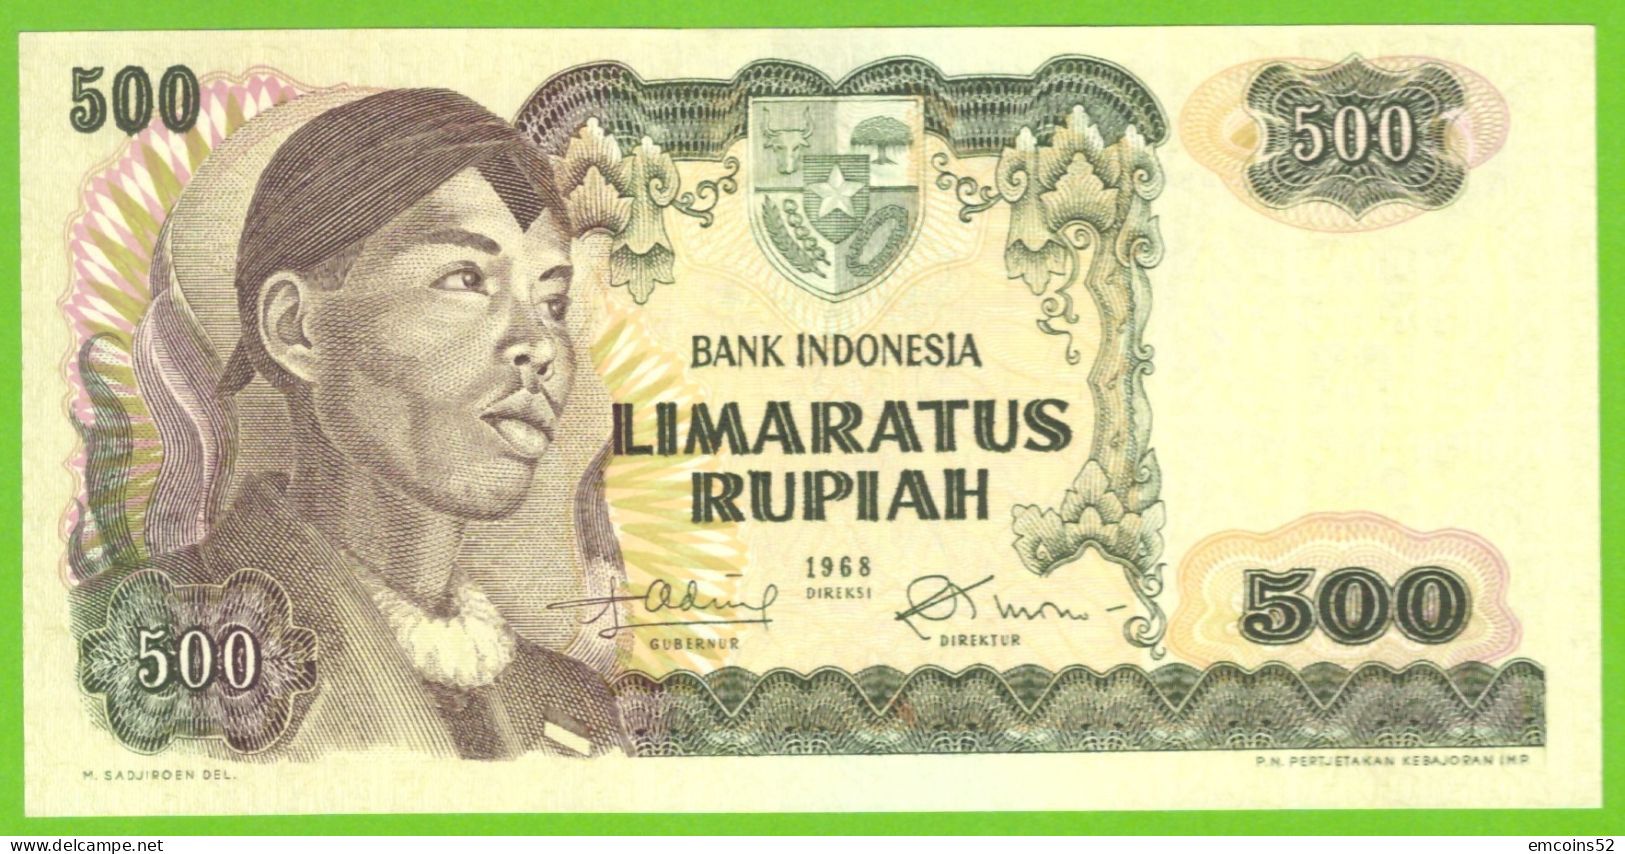 INDONESIA 500 RUPIAH 1968  P-109  UNC - Indonesien